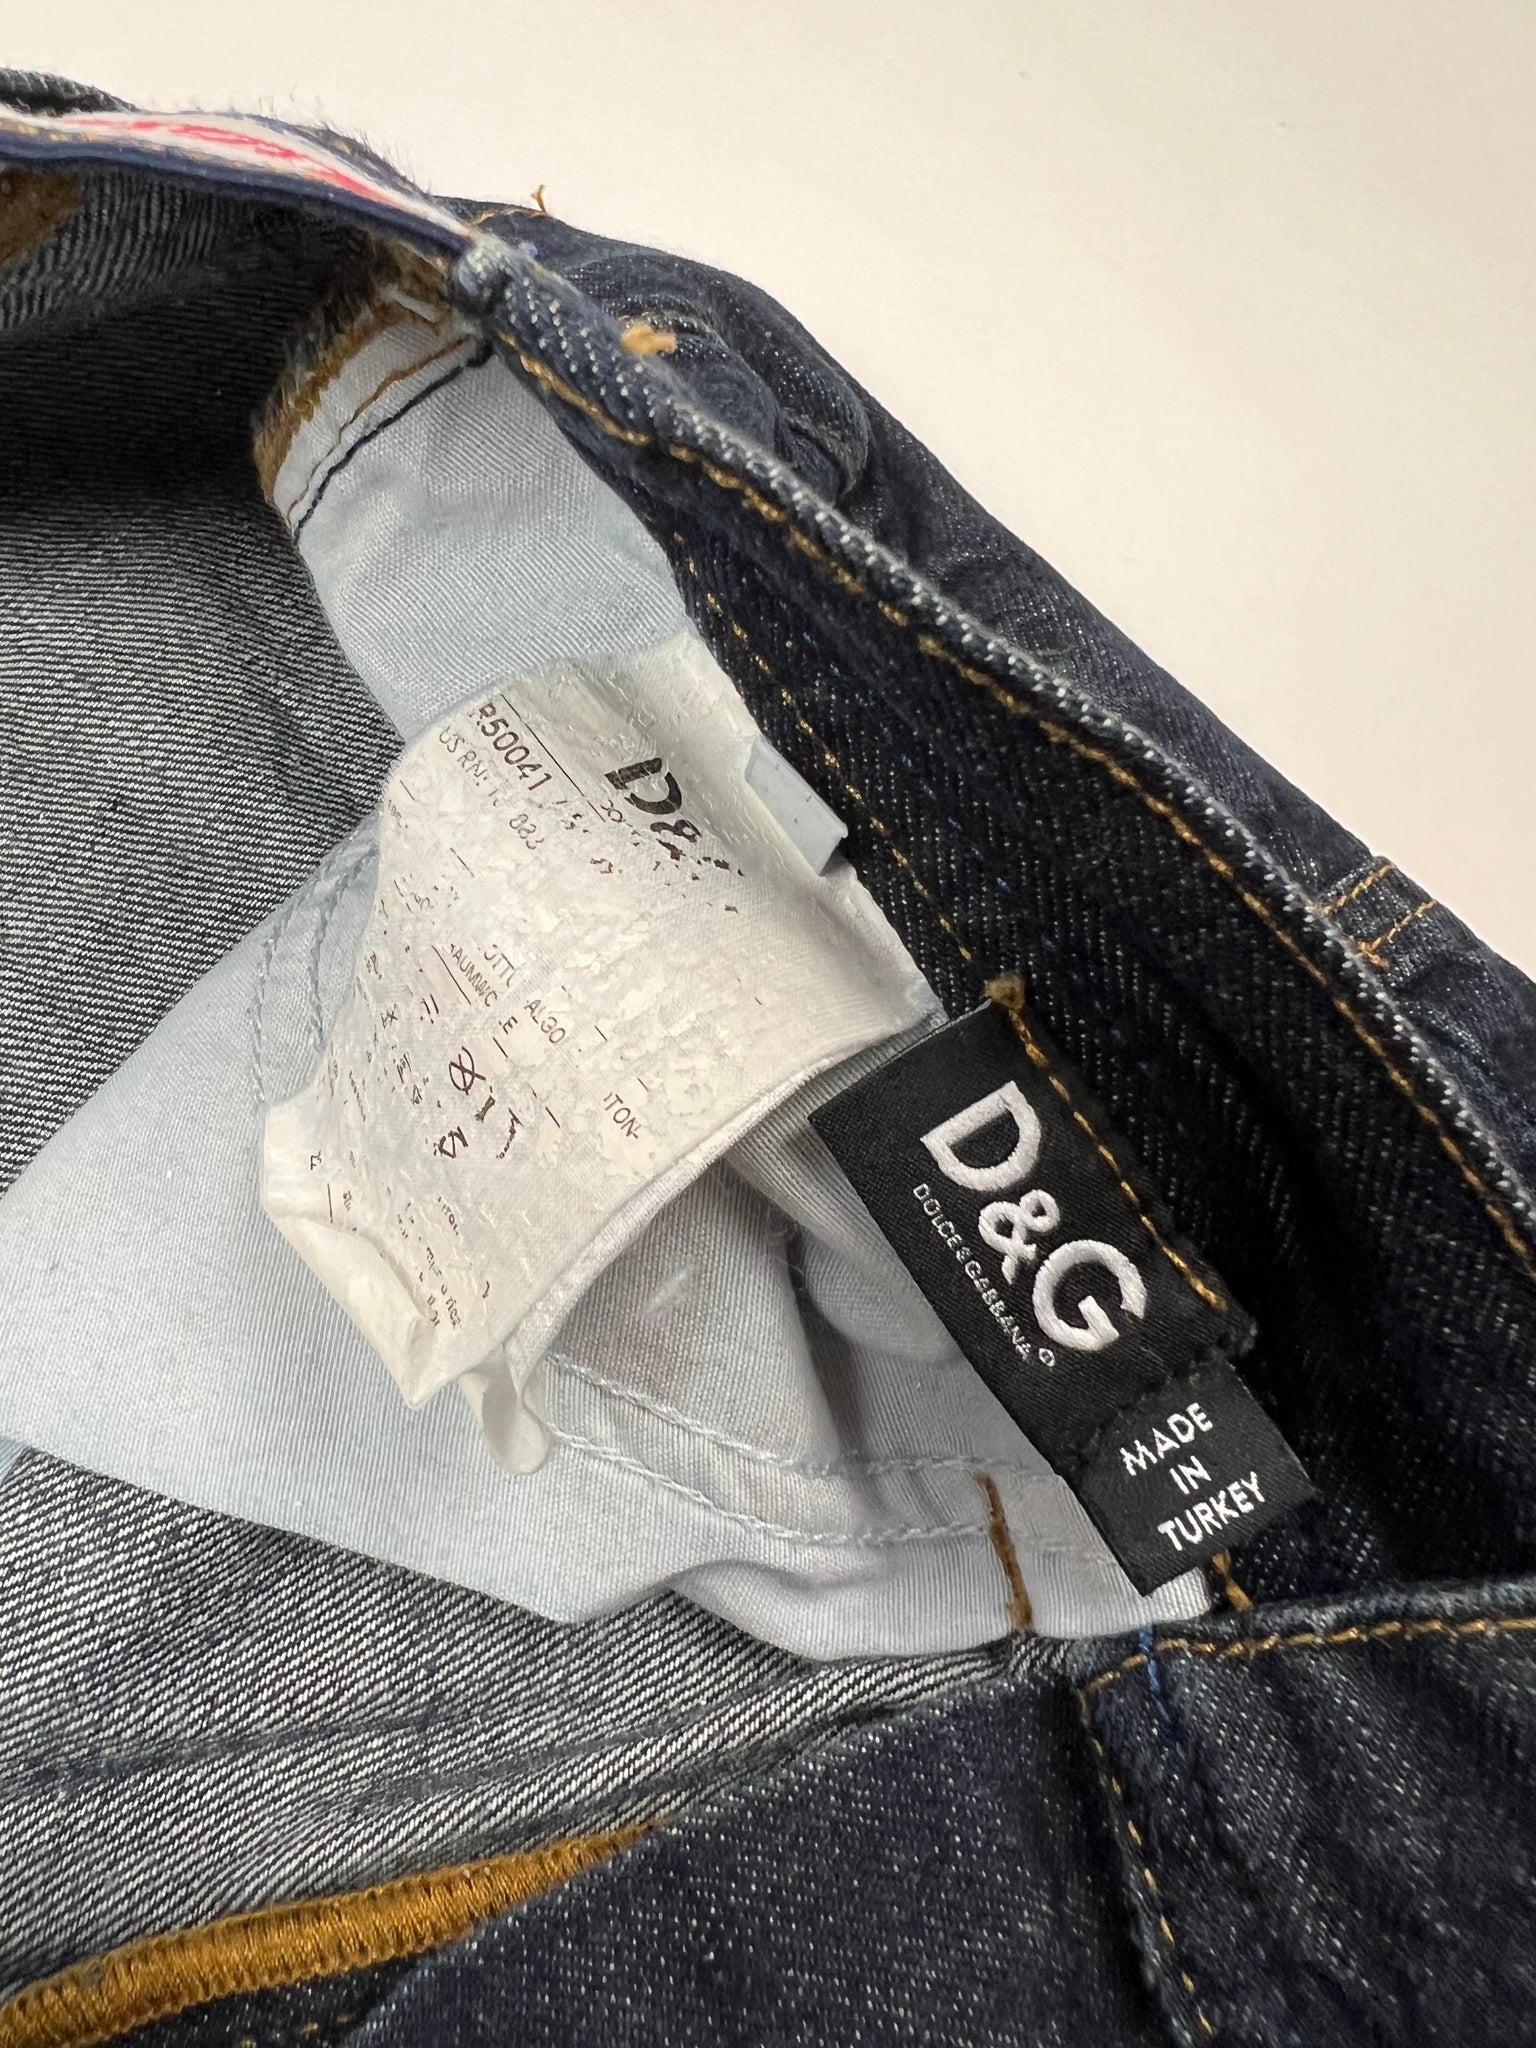 Dolce & Gabbana Jeans (32)